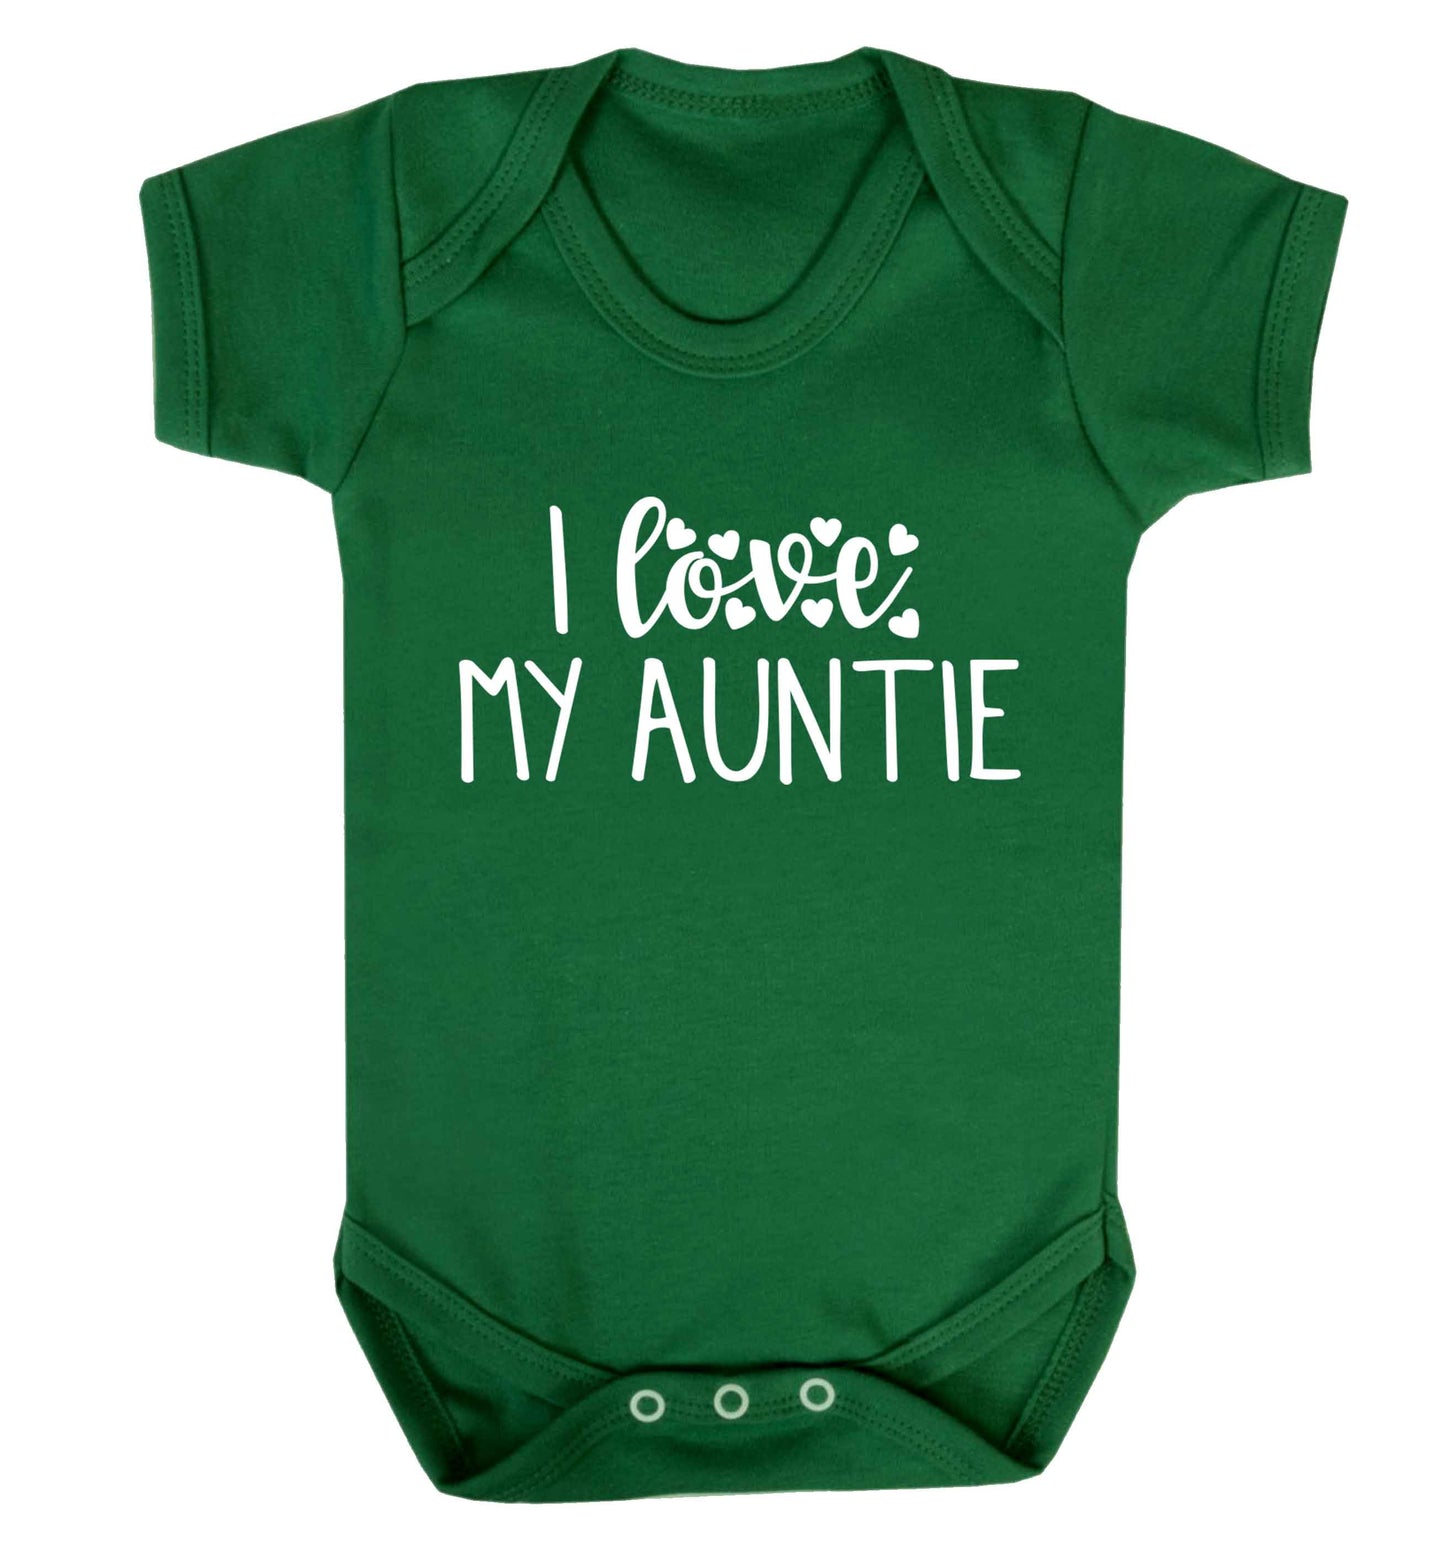 I love my auntie Baby Vest green 18-24 months